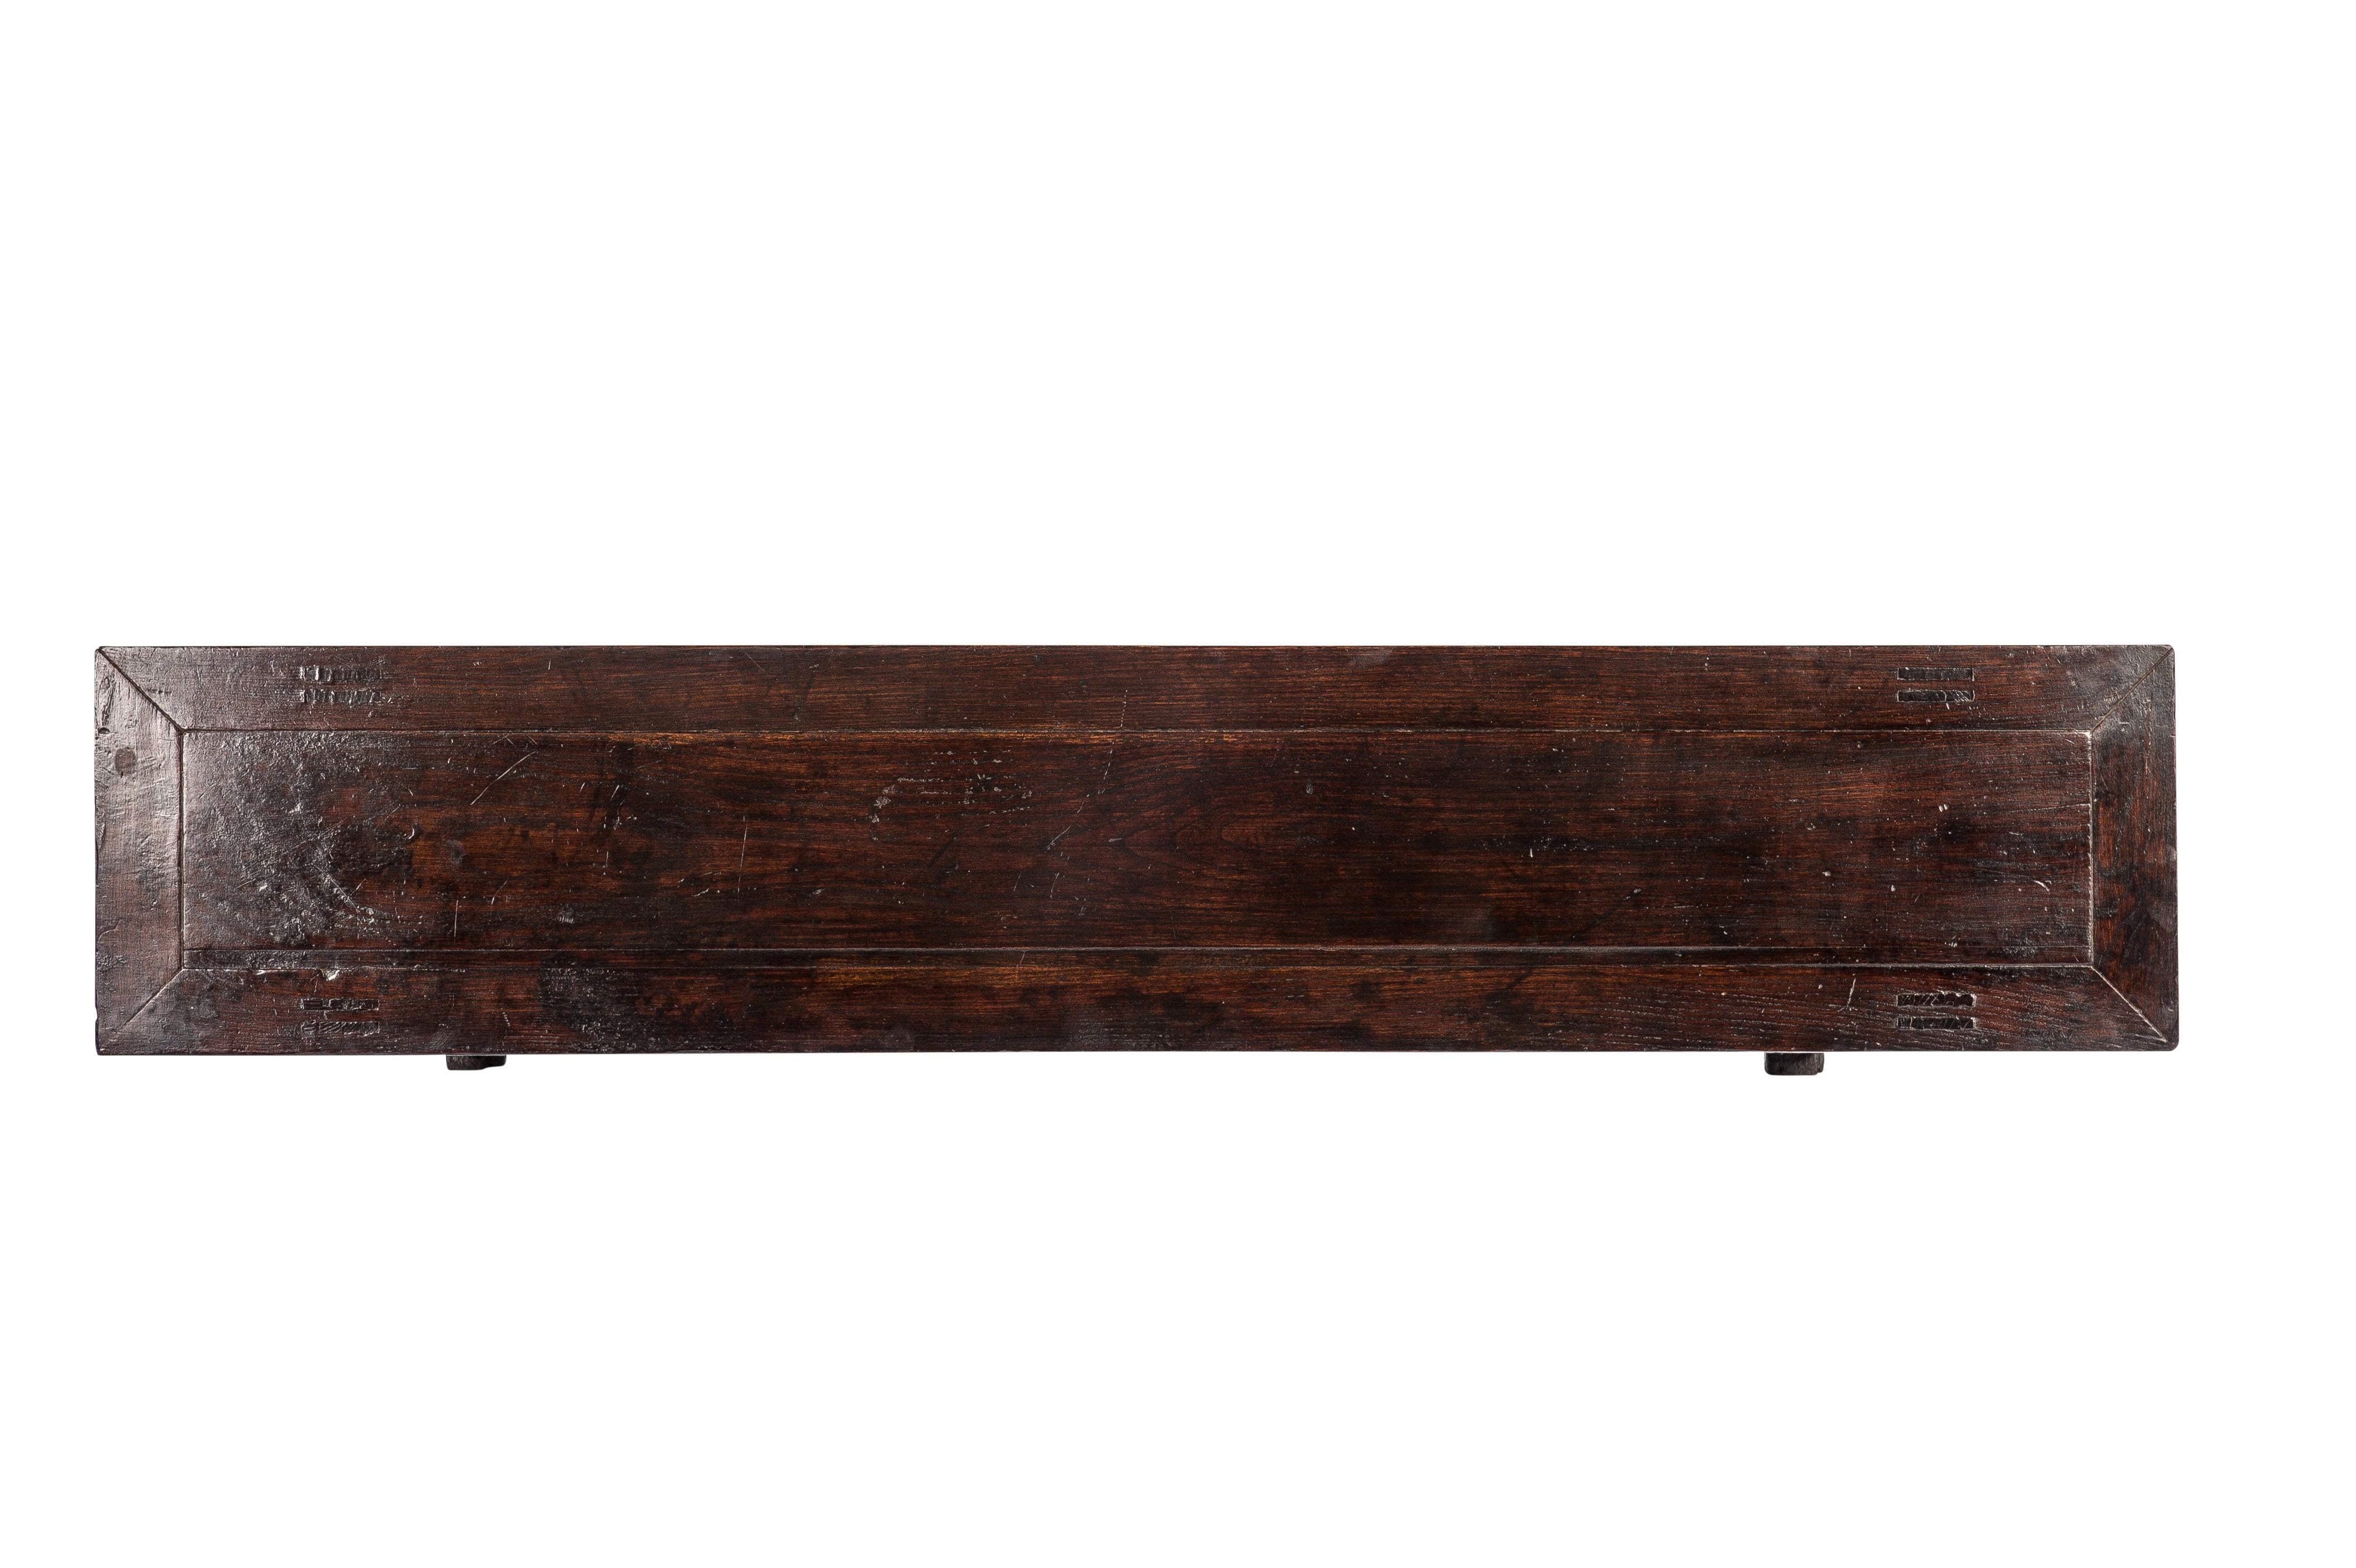 Cette élégante table d'autel a été fabriquée pendant la période chinoise du Shanxi et date d'environ 1850. 
Elle est bien construite en utilisant des techniques d'assemblage à tenons et mortaises, comme c'était souvent le cas pour ces tables. 
La